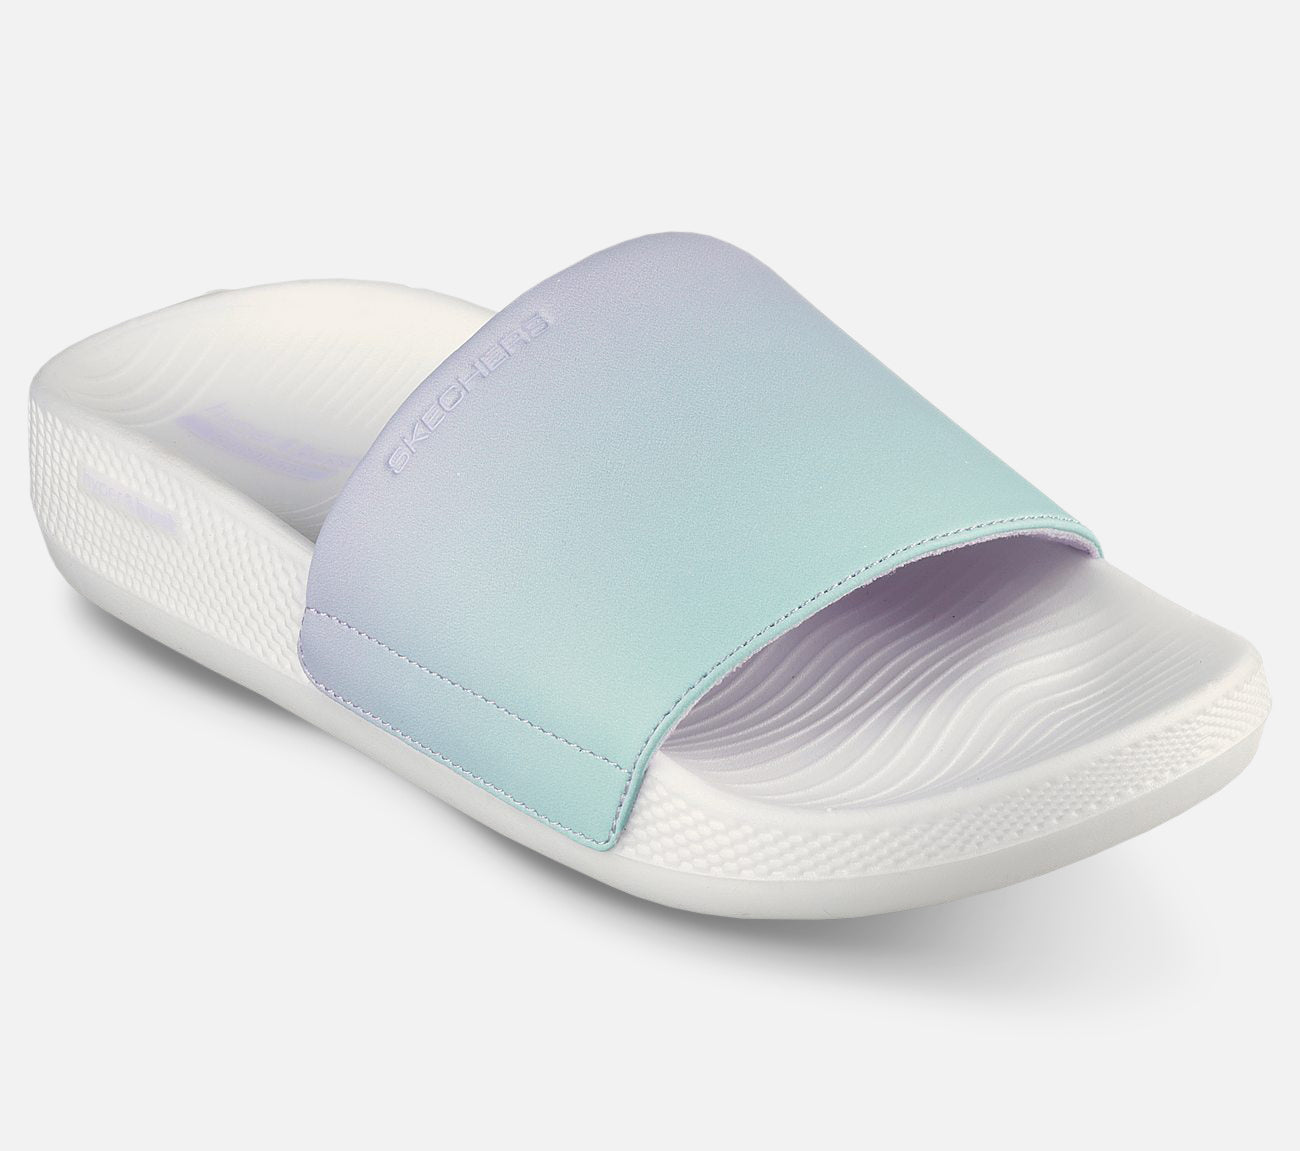 Hyper Slide - Summer Dreams Sandal Skechers